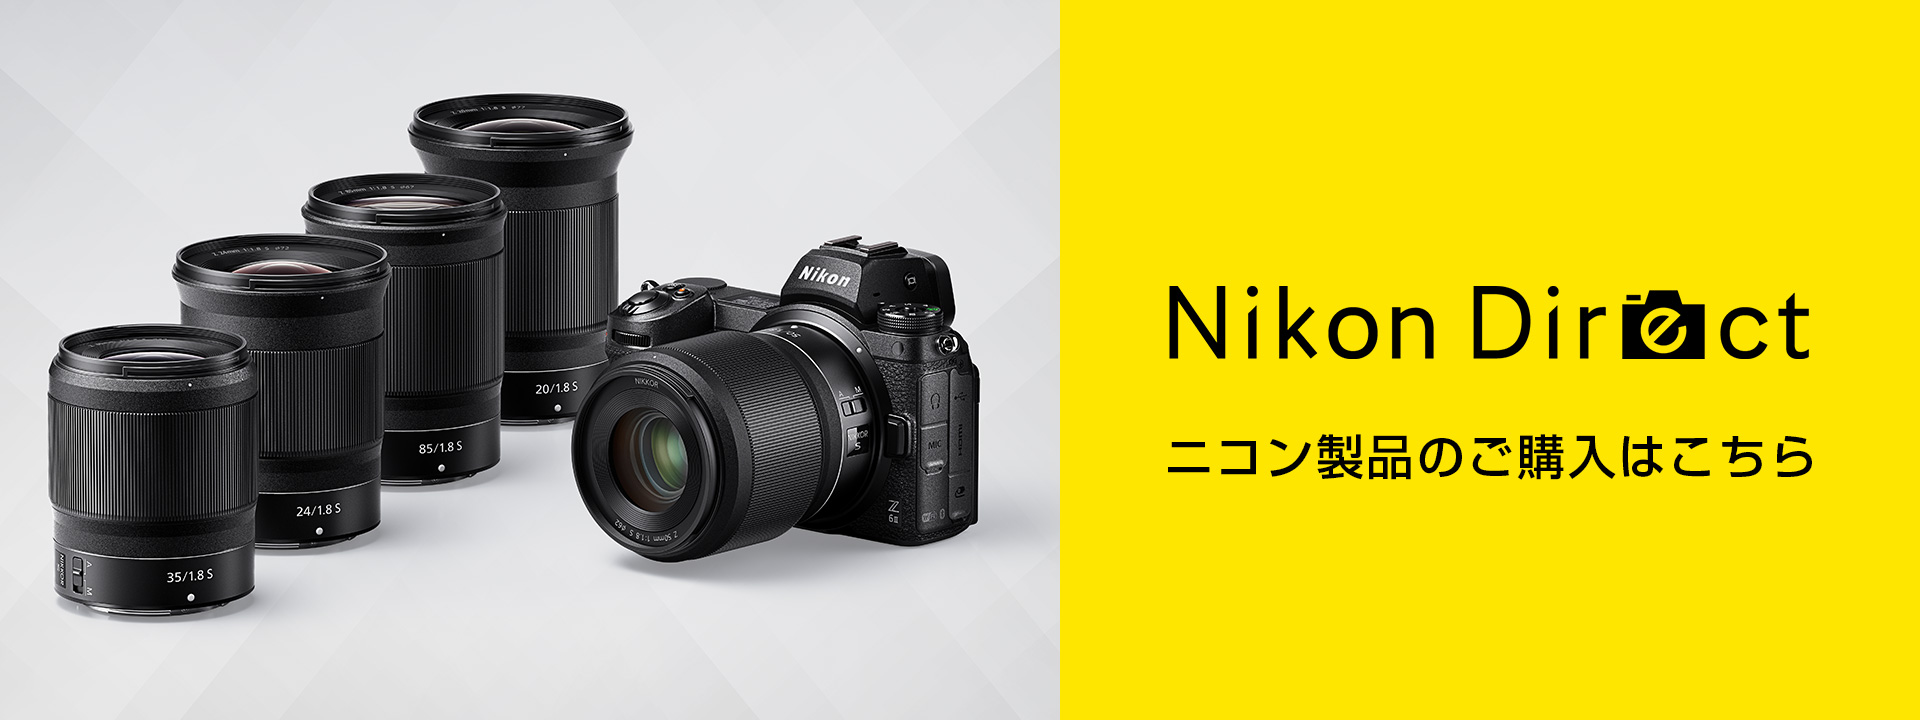 NIKKOR Z DX 16-50mm f/3.5-6.3 VR - 概要 | NIKKORレンズ | ニコン